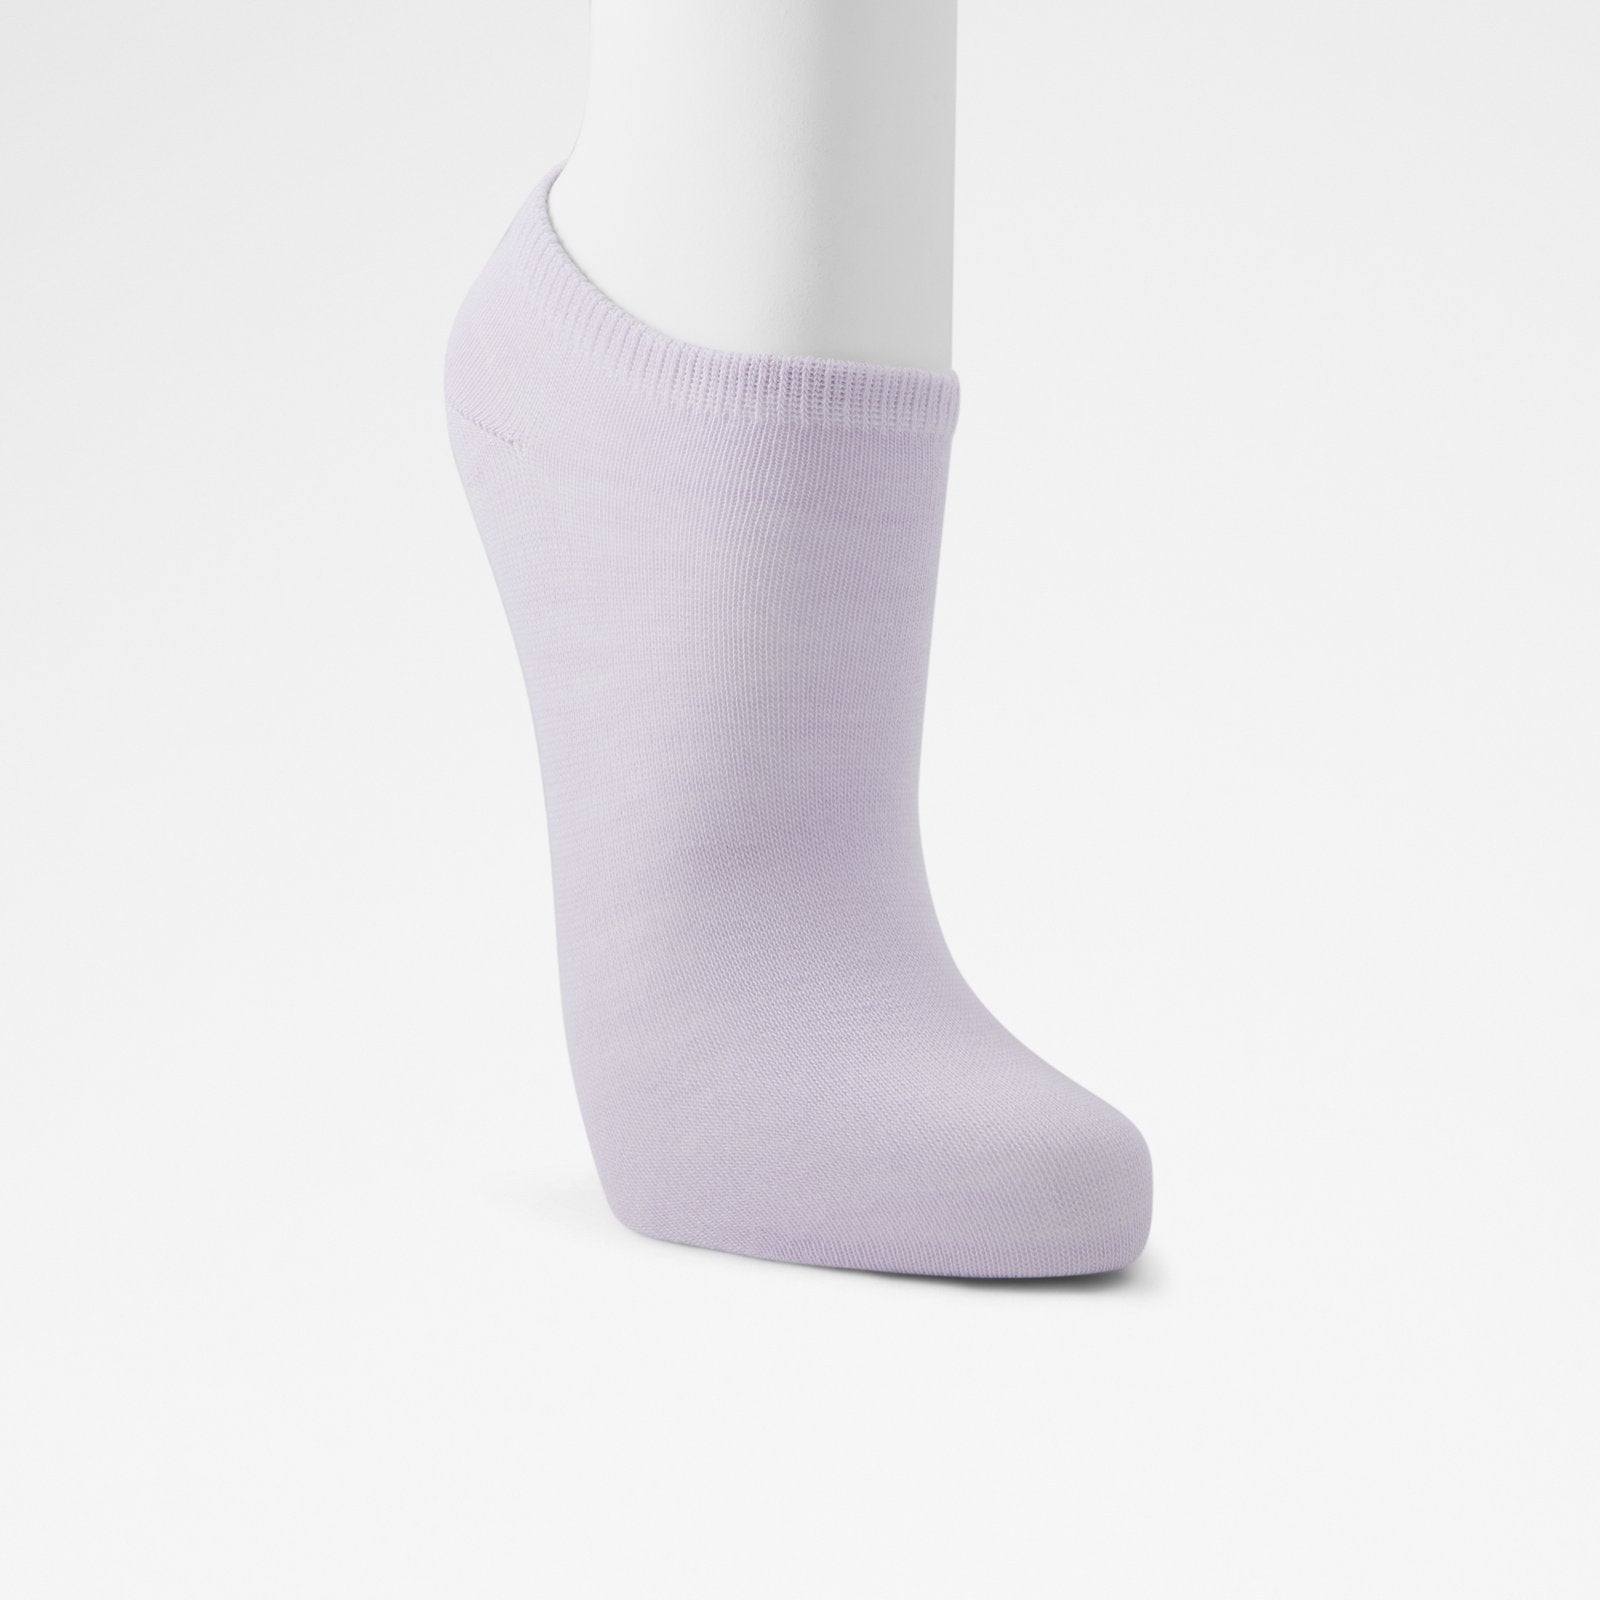 Albaennon / Socks Accessory - Pastel Multi - ALDO KSA